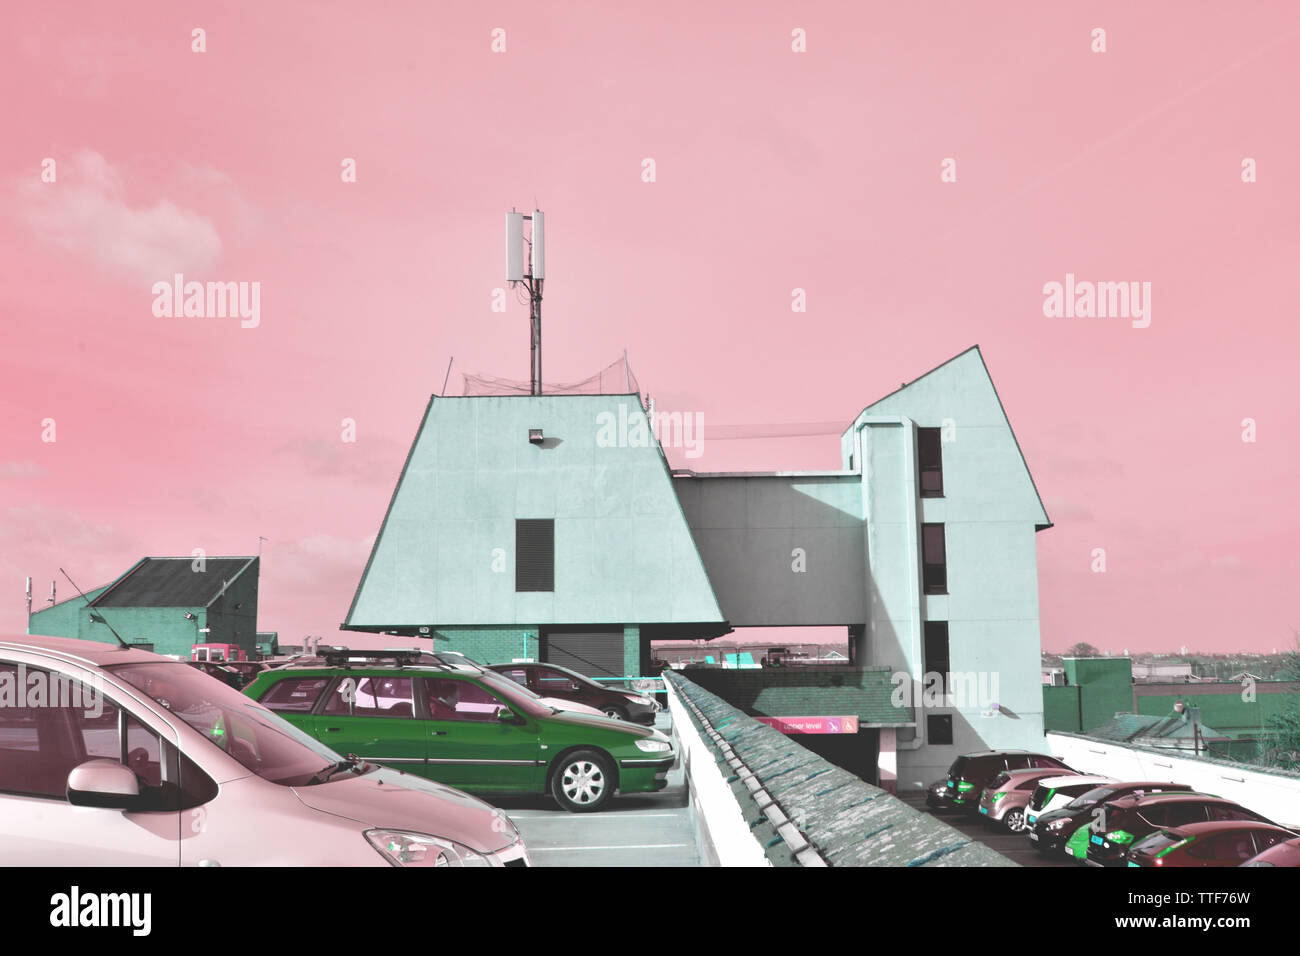 Parkplatz auf dem Dach in Bexleyheath, Mint Green brutalist Stil Gebäude, sowohl zeitgenössischer als auch Retro, pink Saccharin sirupartige Skies, feindlichen Farben Stockfoto